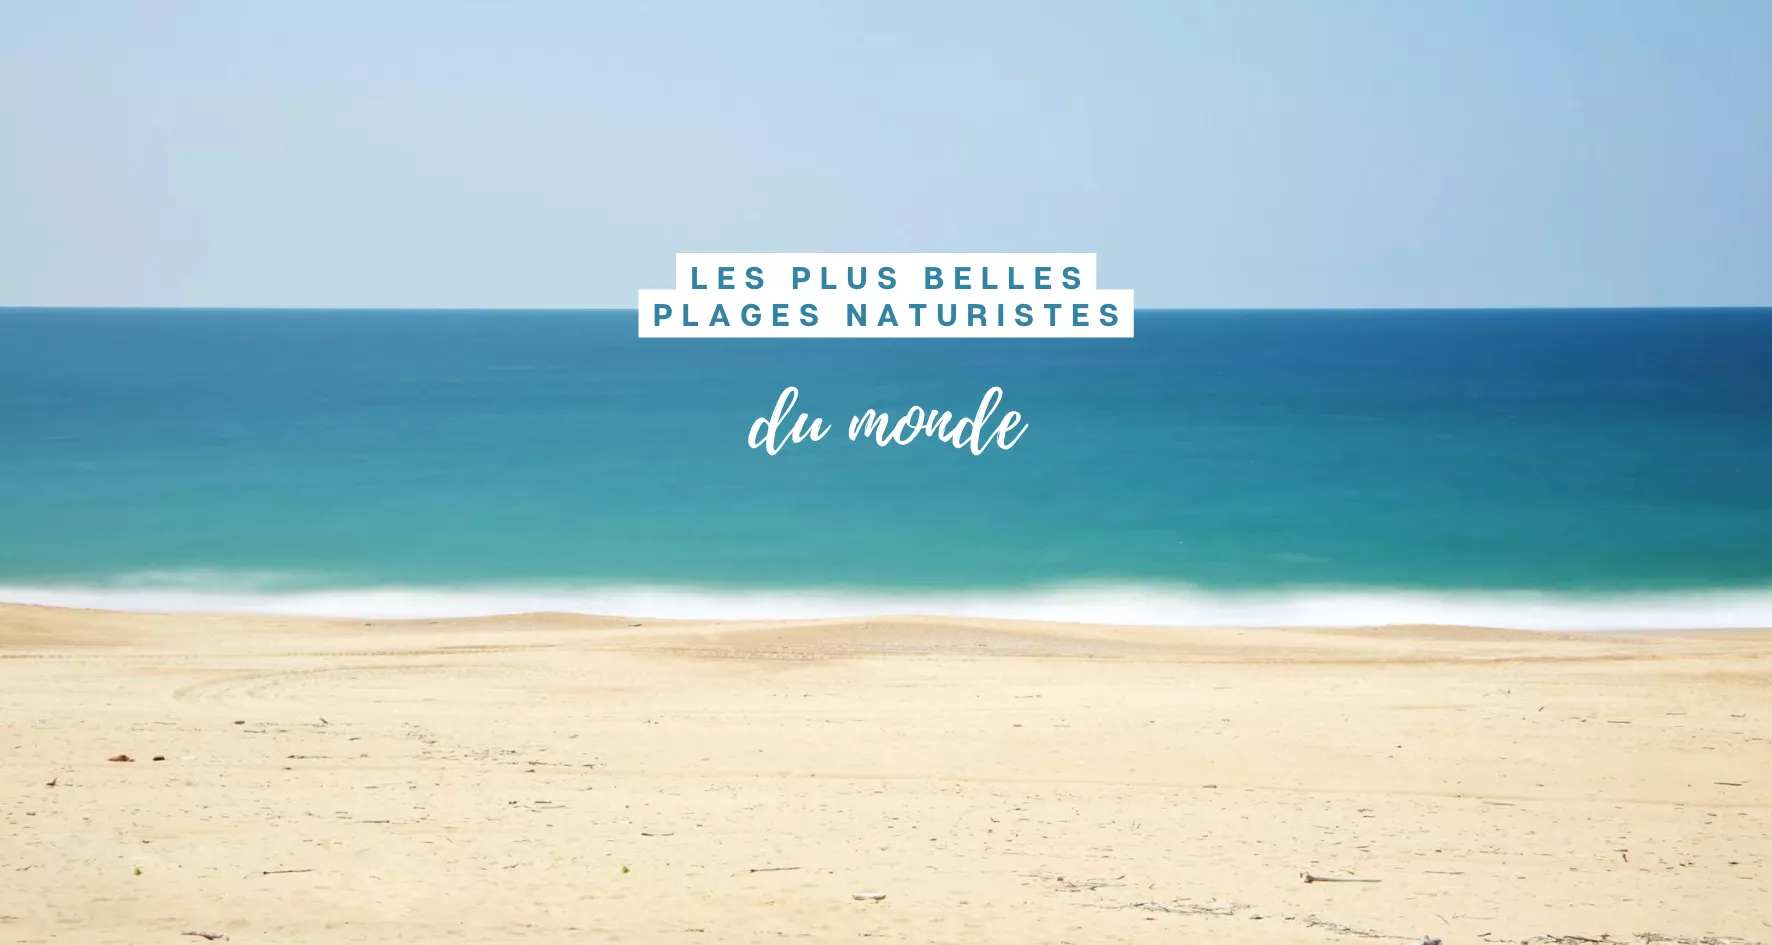 Main image of article: Les meilleures plages naturistes